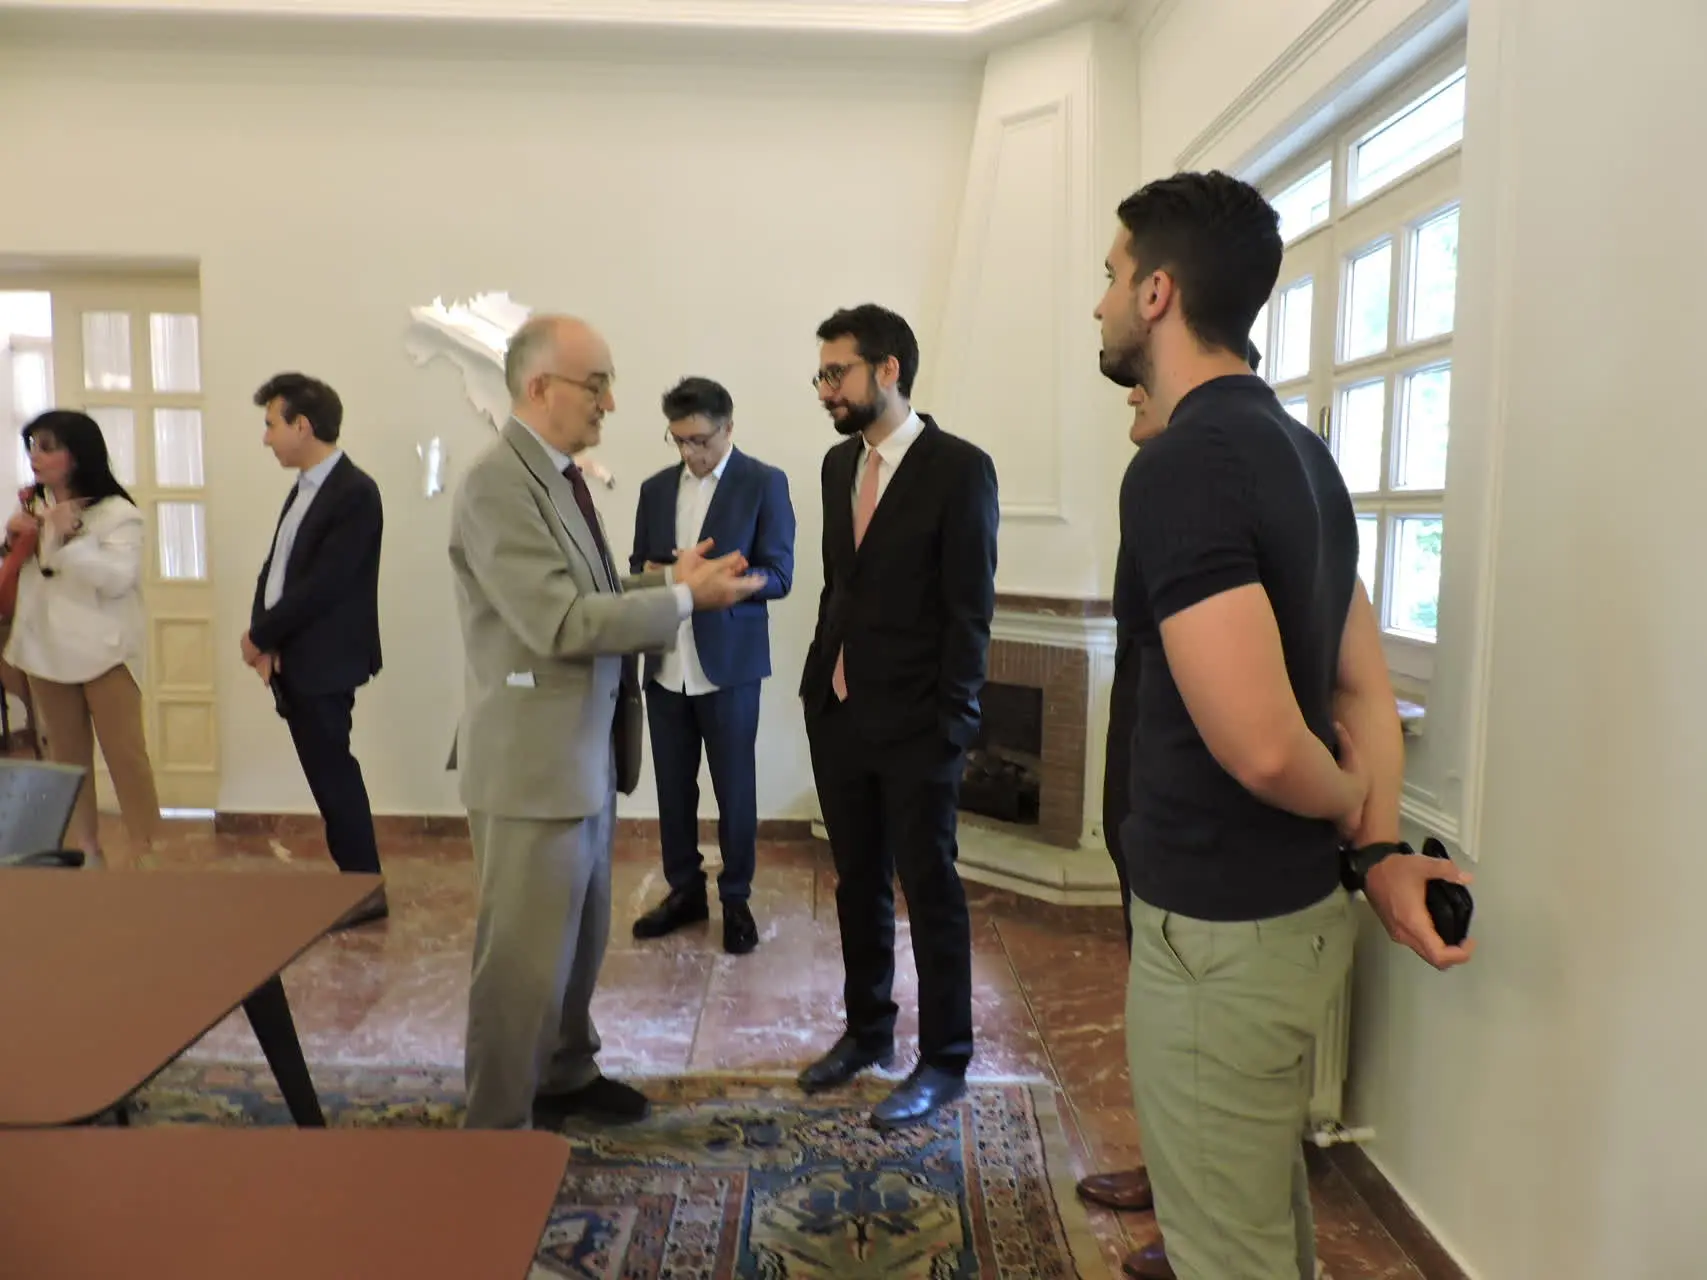 سالن کنفرانس اقامتگاه سفیر ایتالیا در تهران افتتاح شد